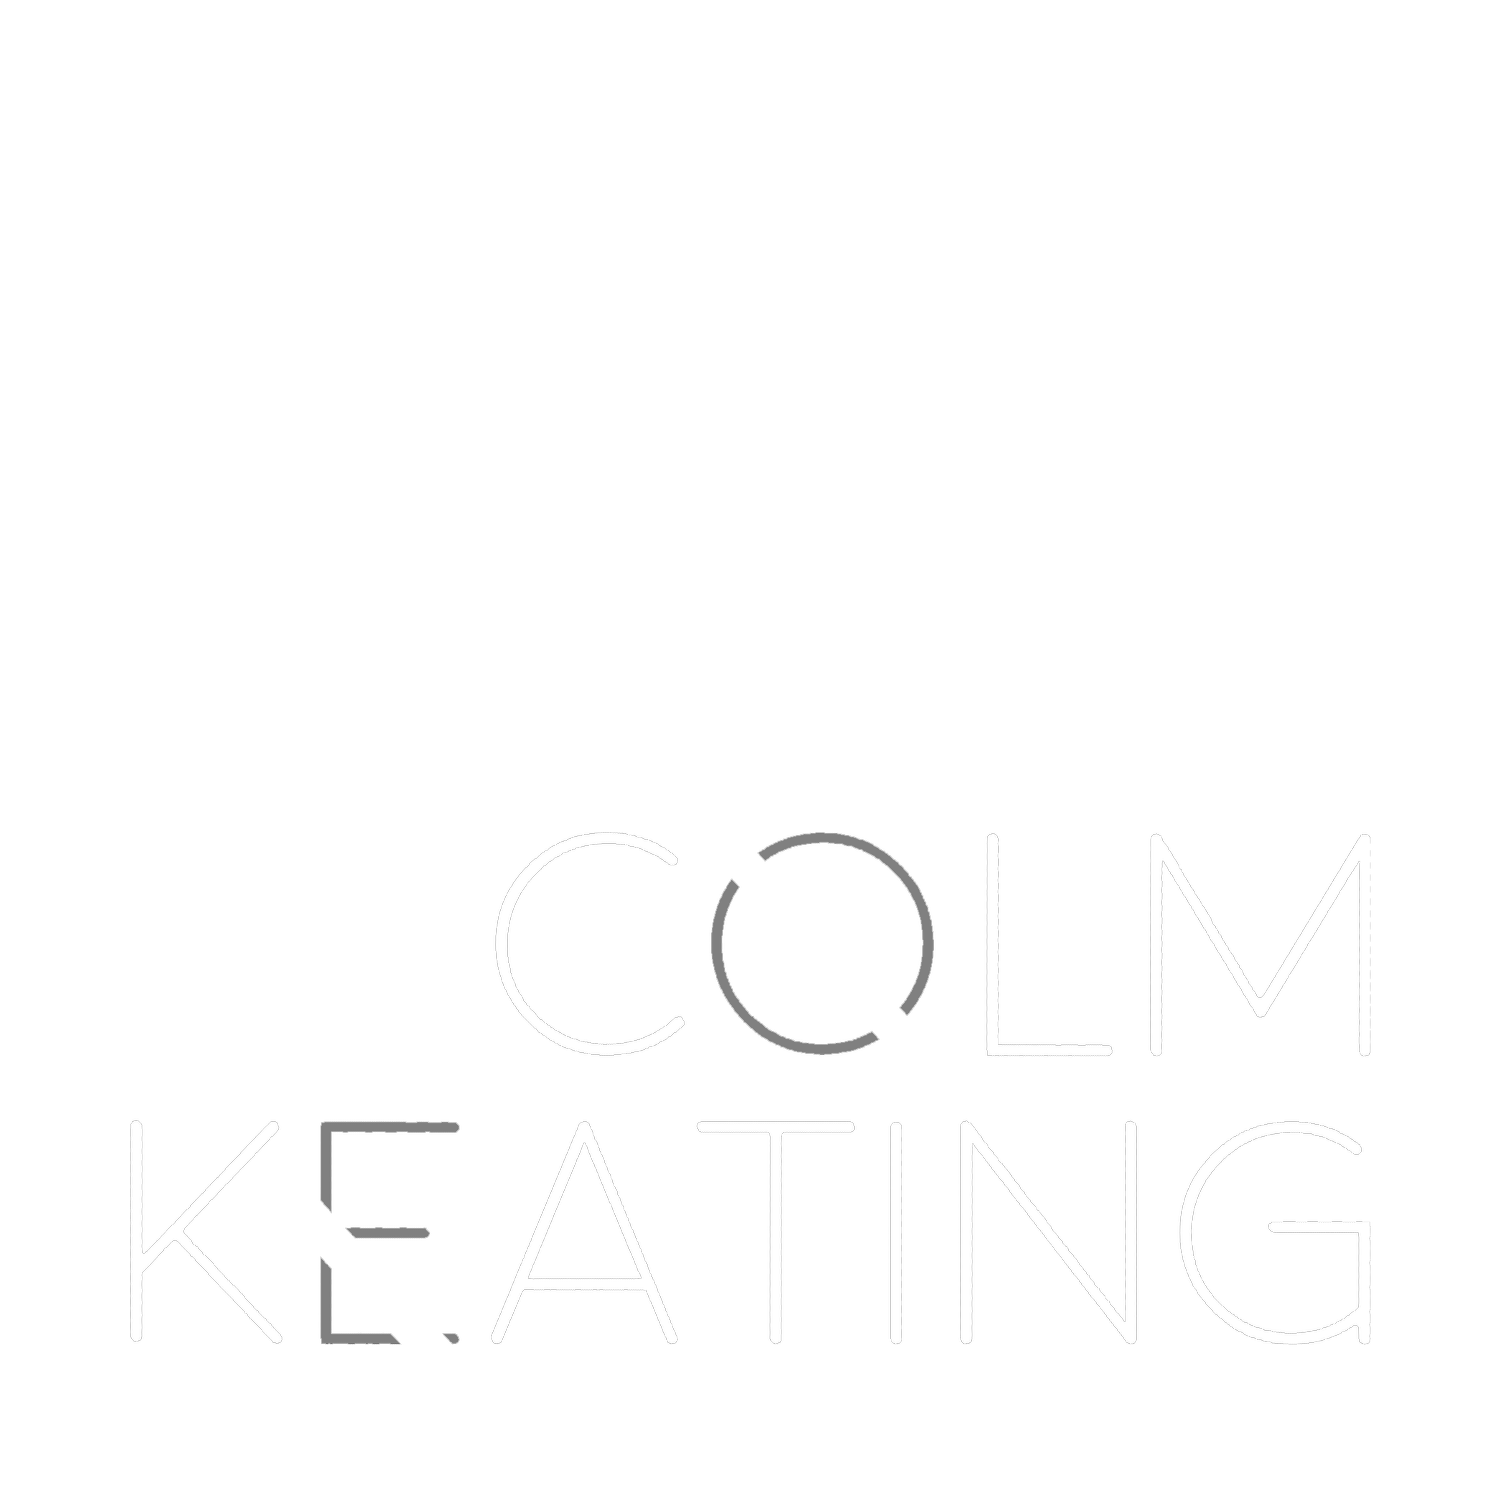 Colm Keating